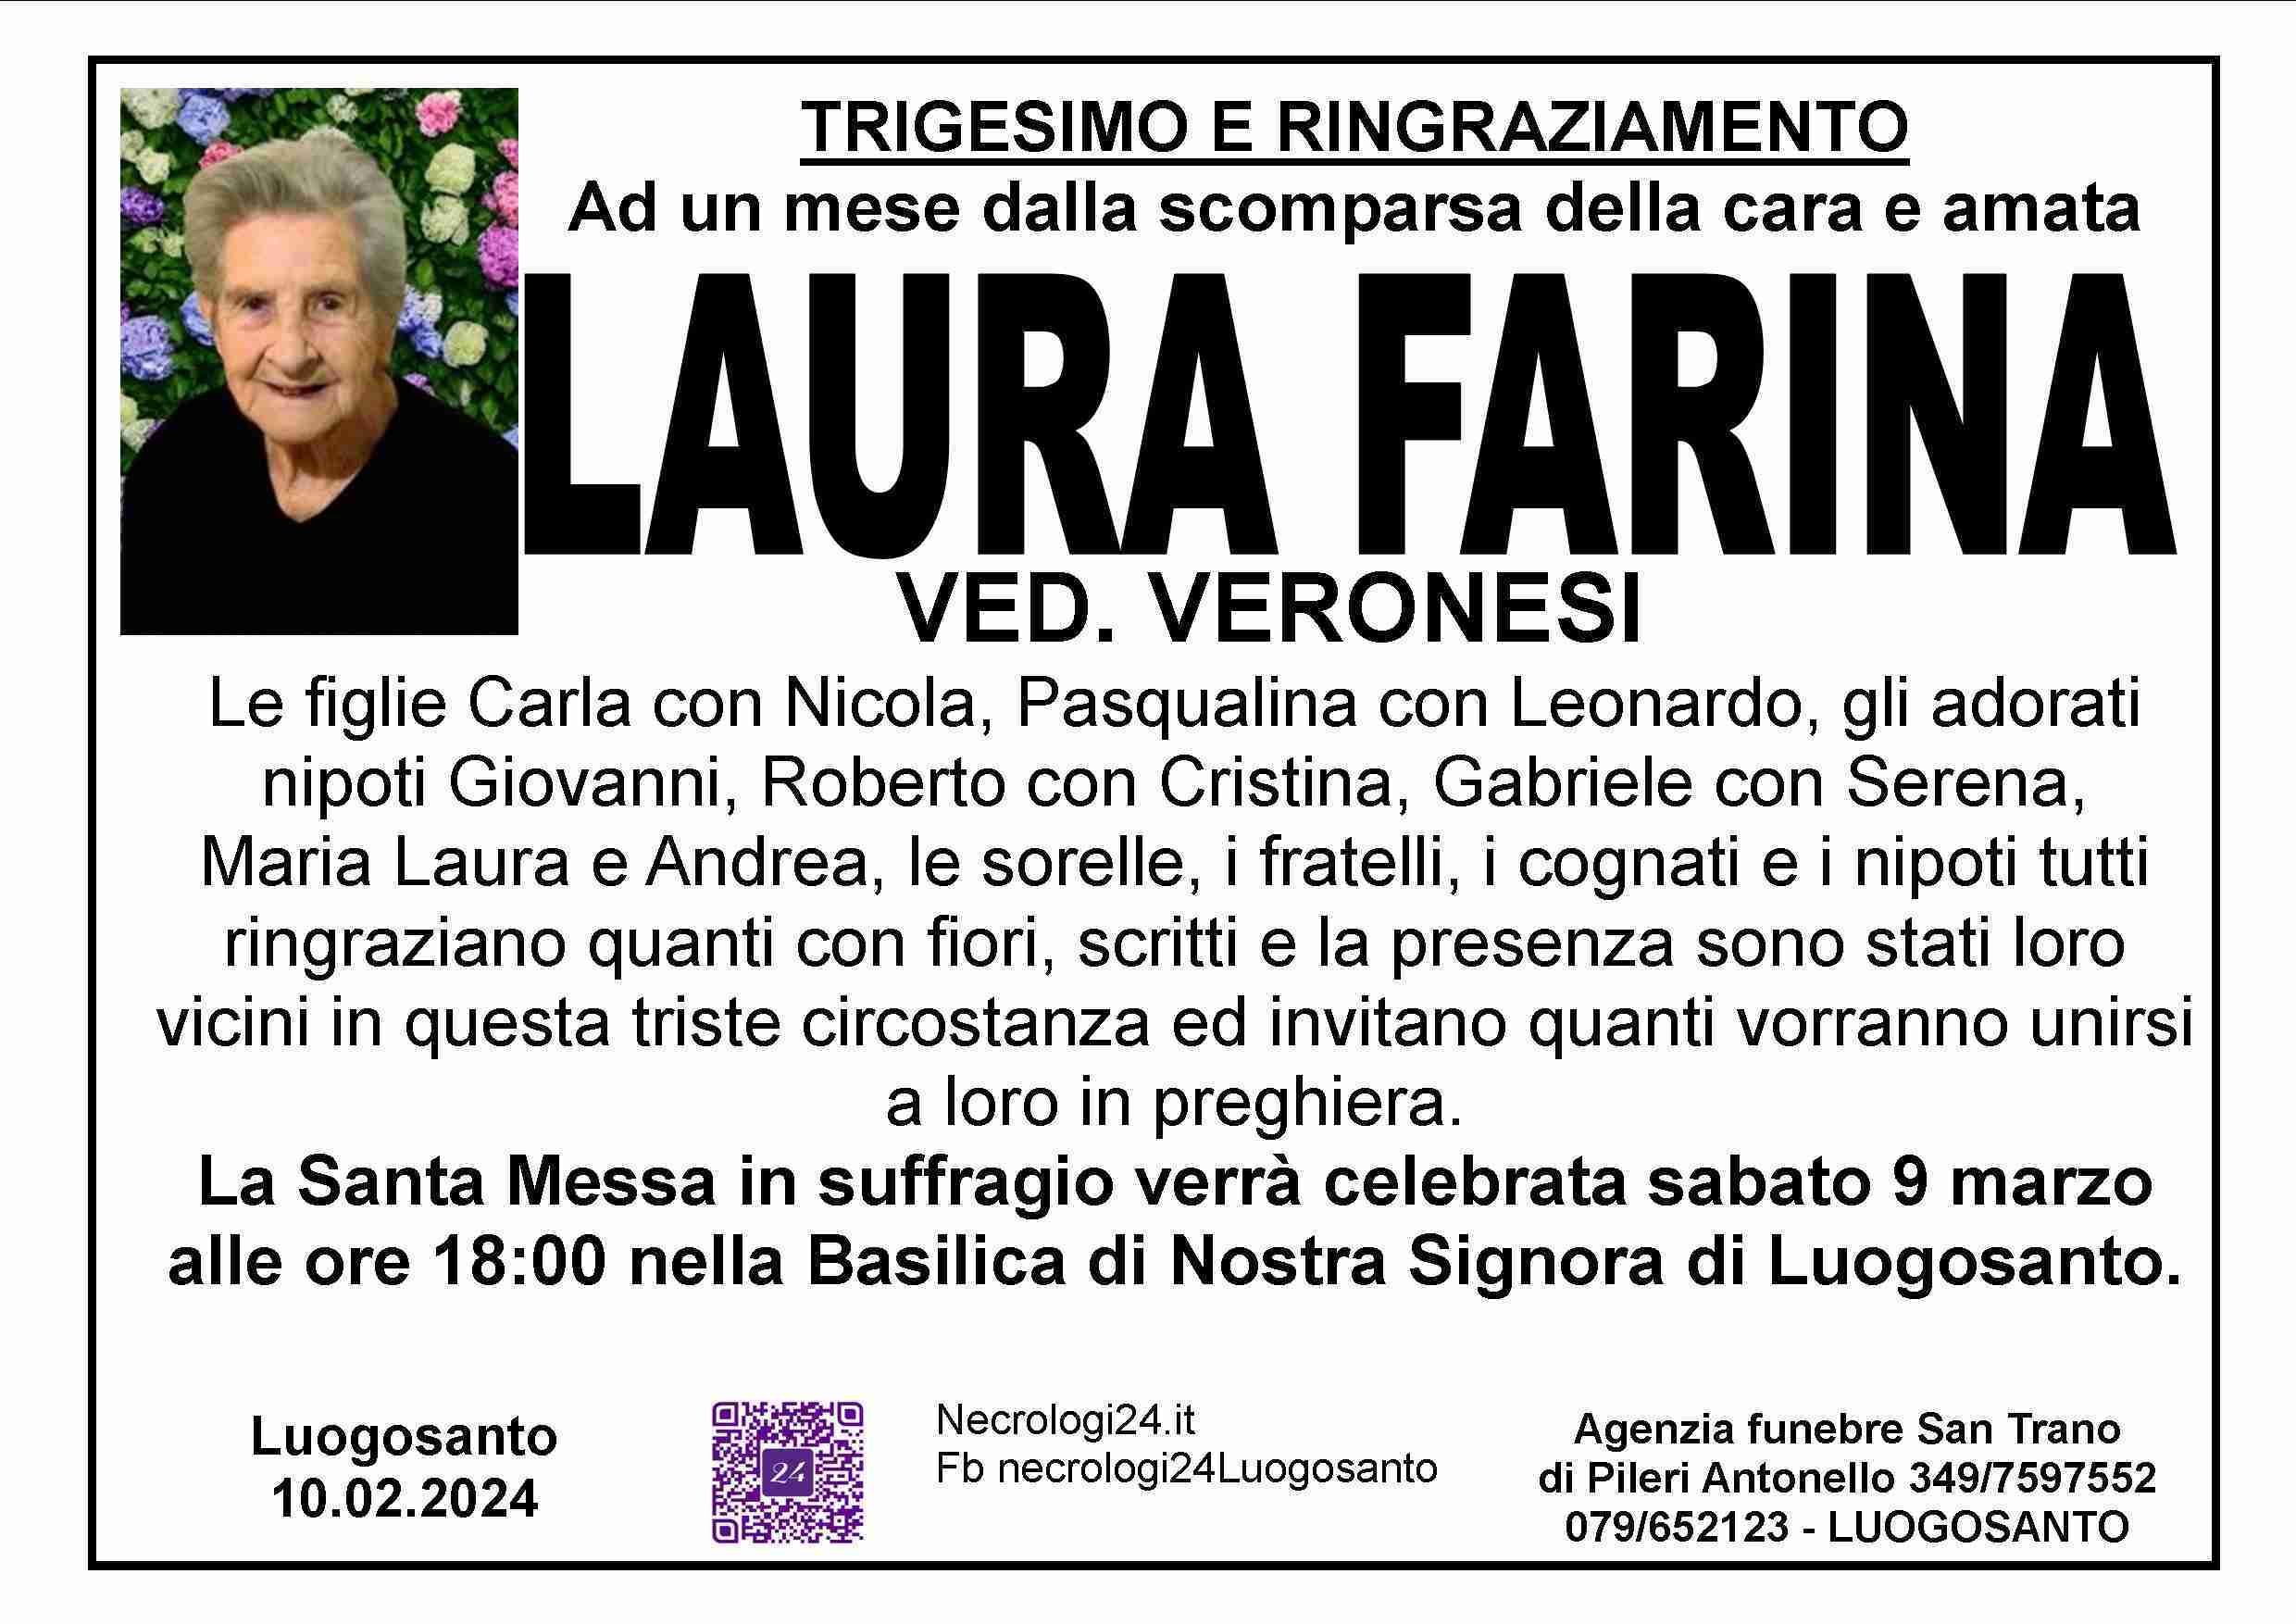 Laura Farina